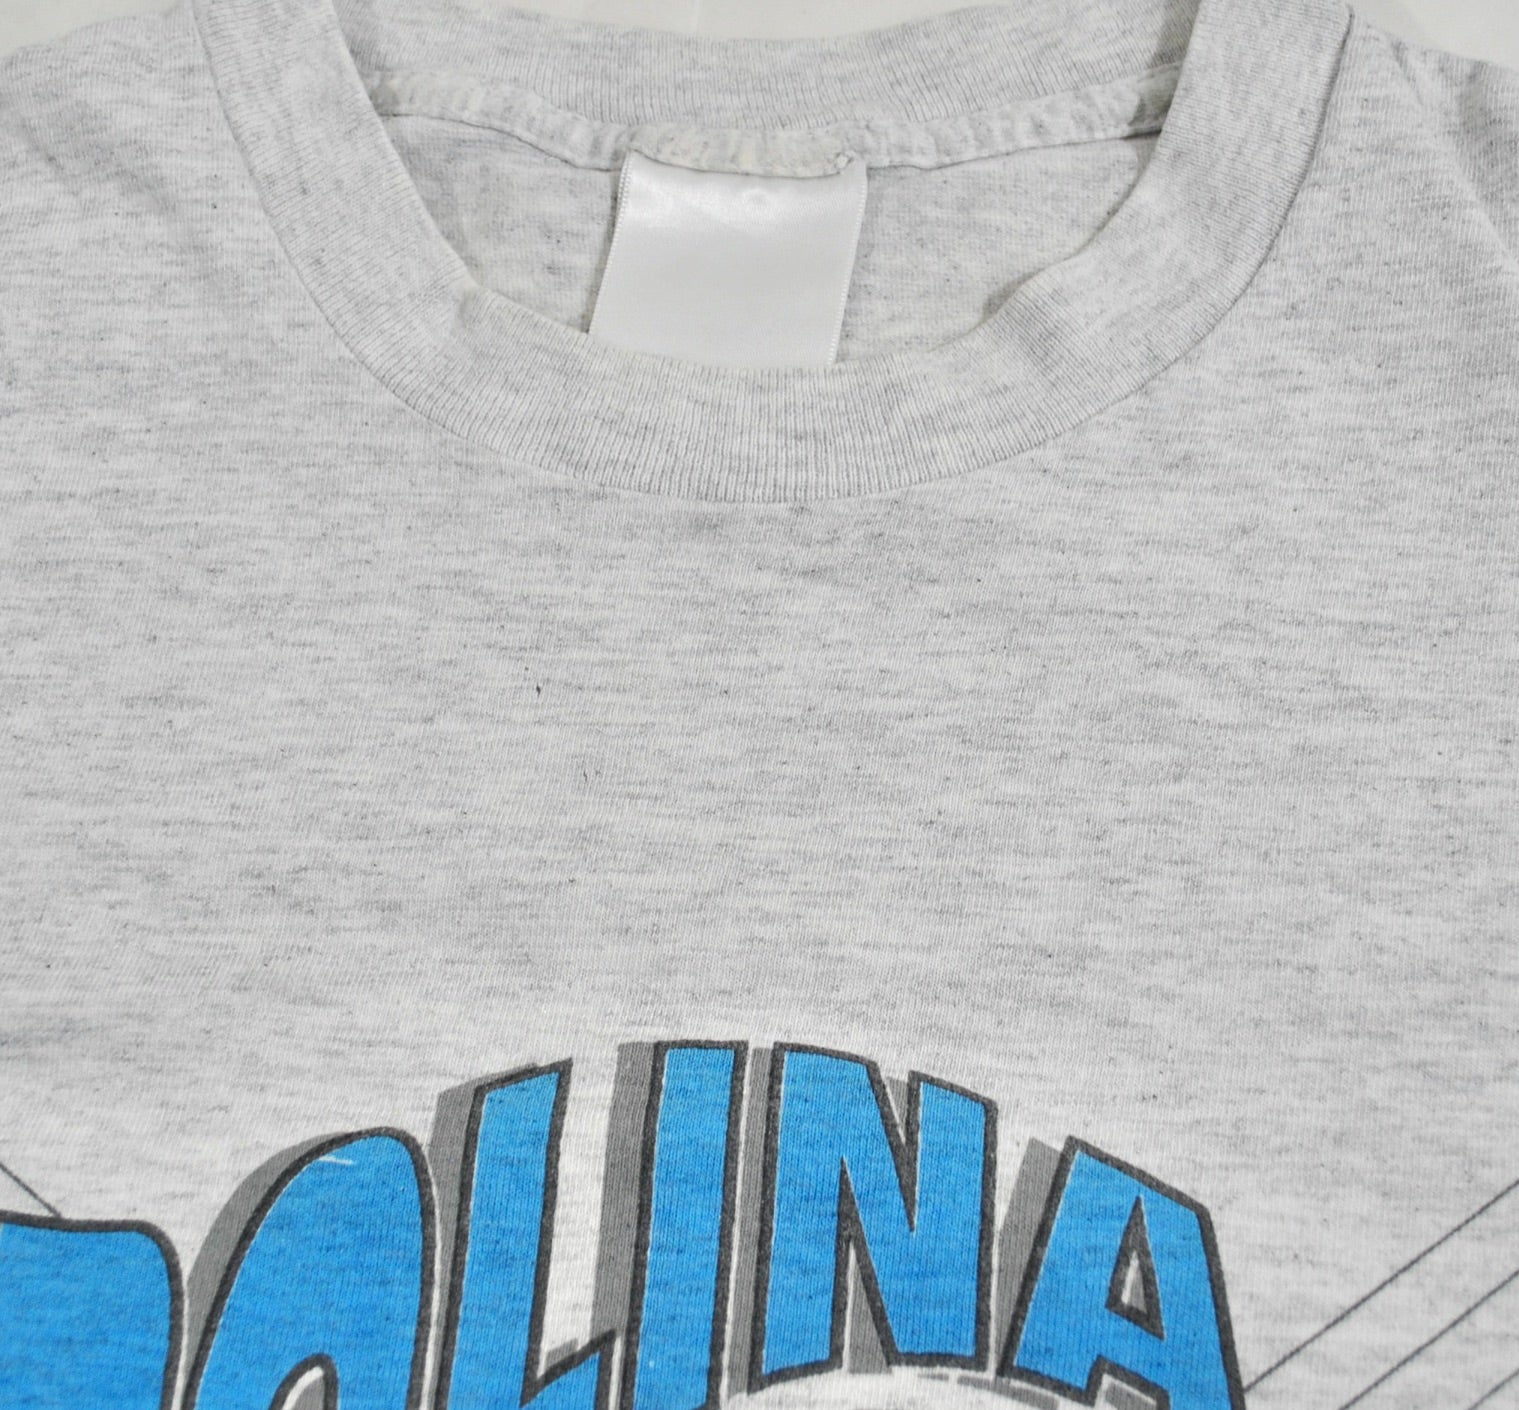 TMA Retro T-Shirt – TMA STL Shop